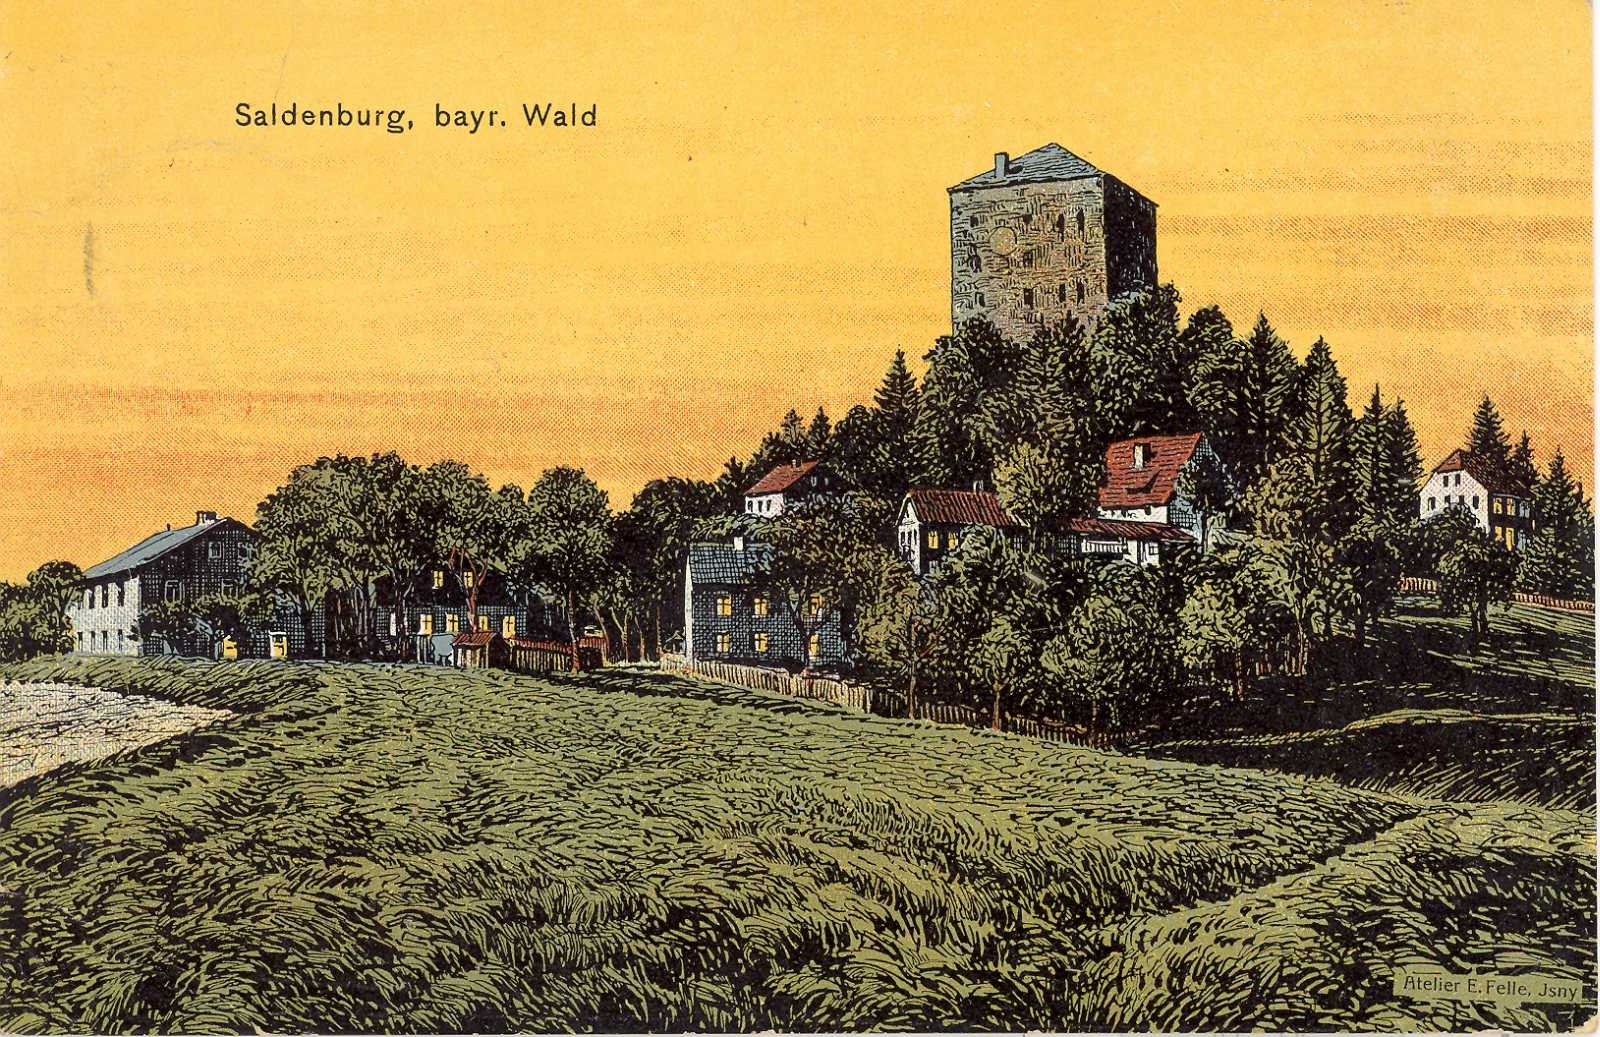 Eine kolorierte Ansicht von der Saldenburg.